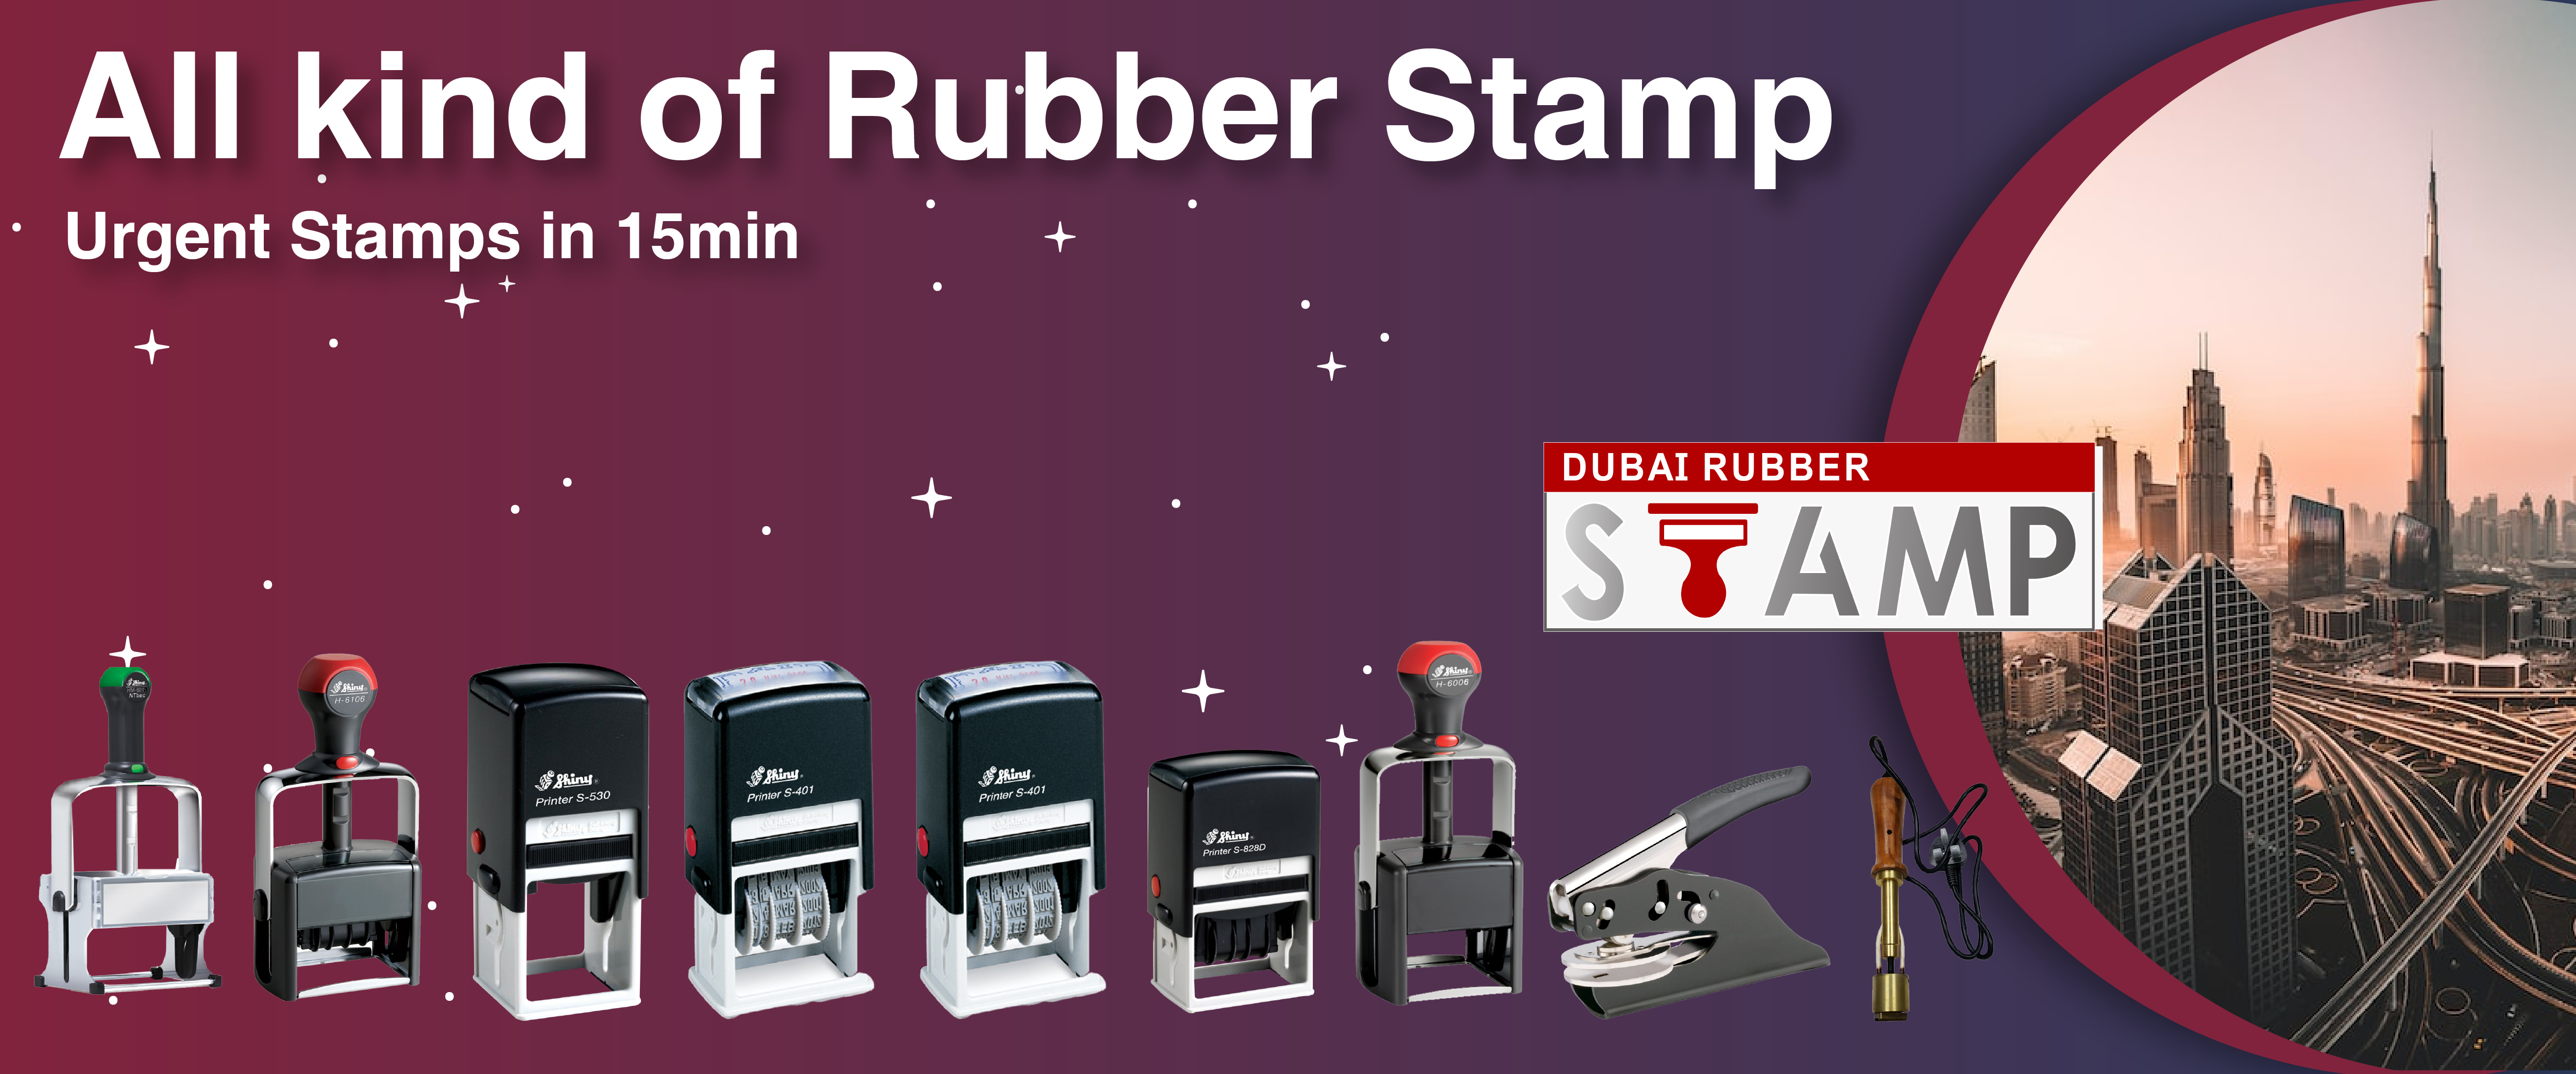 Dubai Rubber Stamp